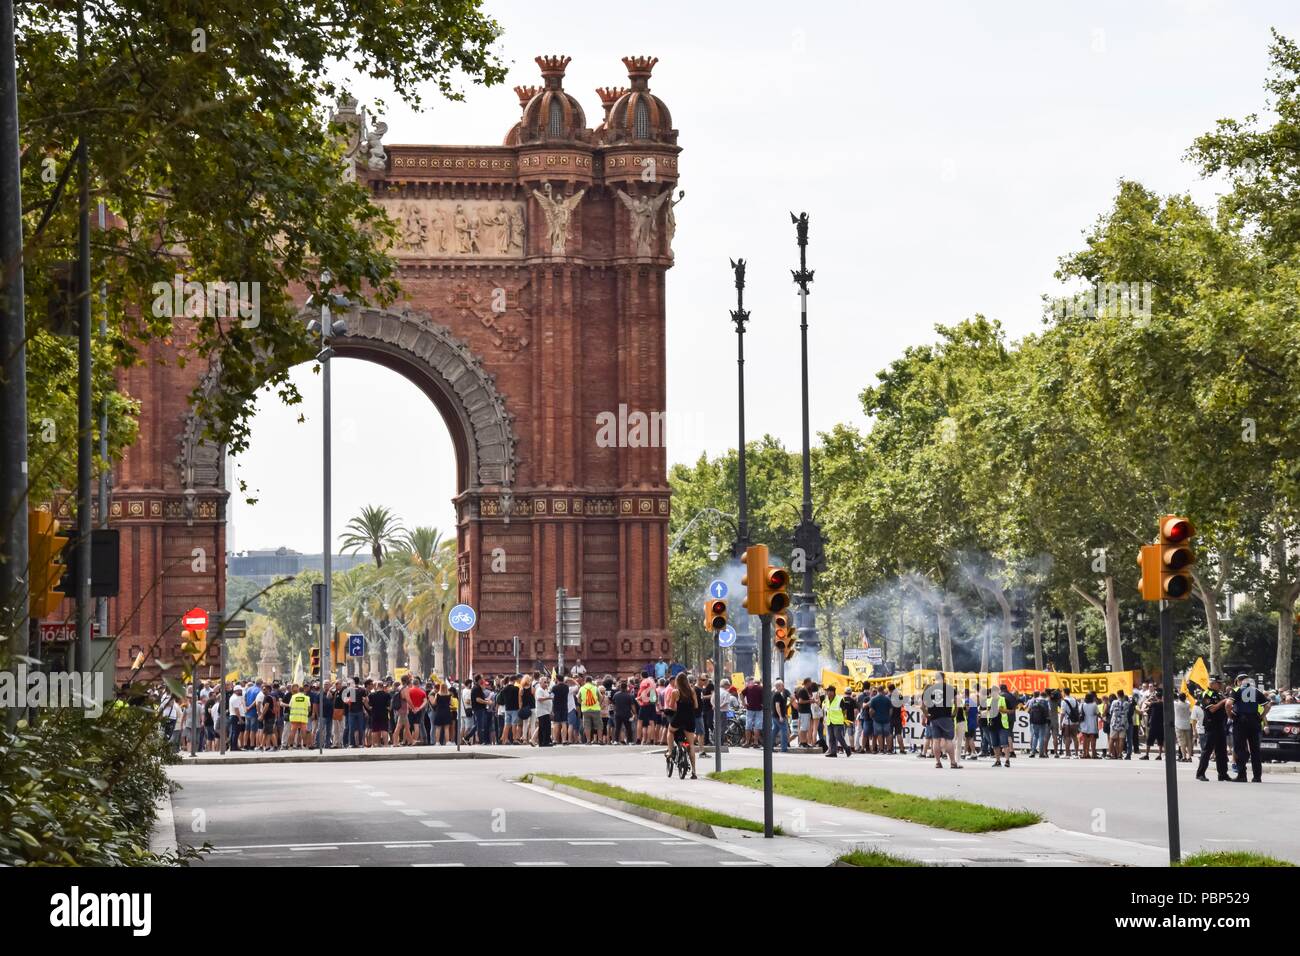 Barcelona, España - 25 de julio de 2018: los taxistas protestan contra Uber y Cabify porque demasiadas licencias junto al Arc de Triomf con smokebombs Foto de stock